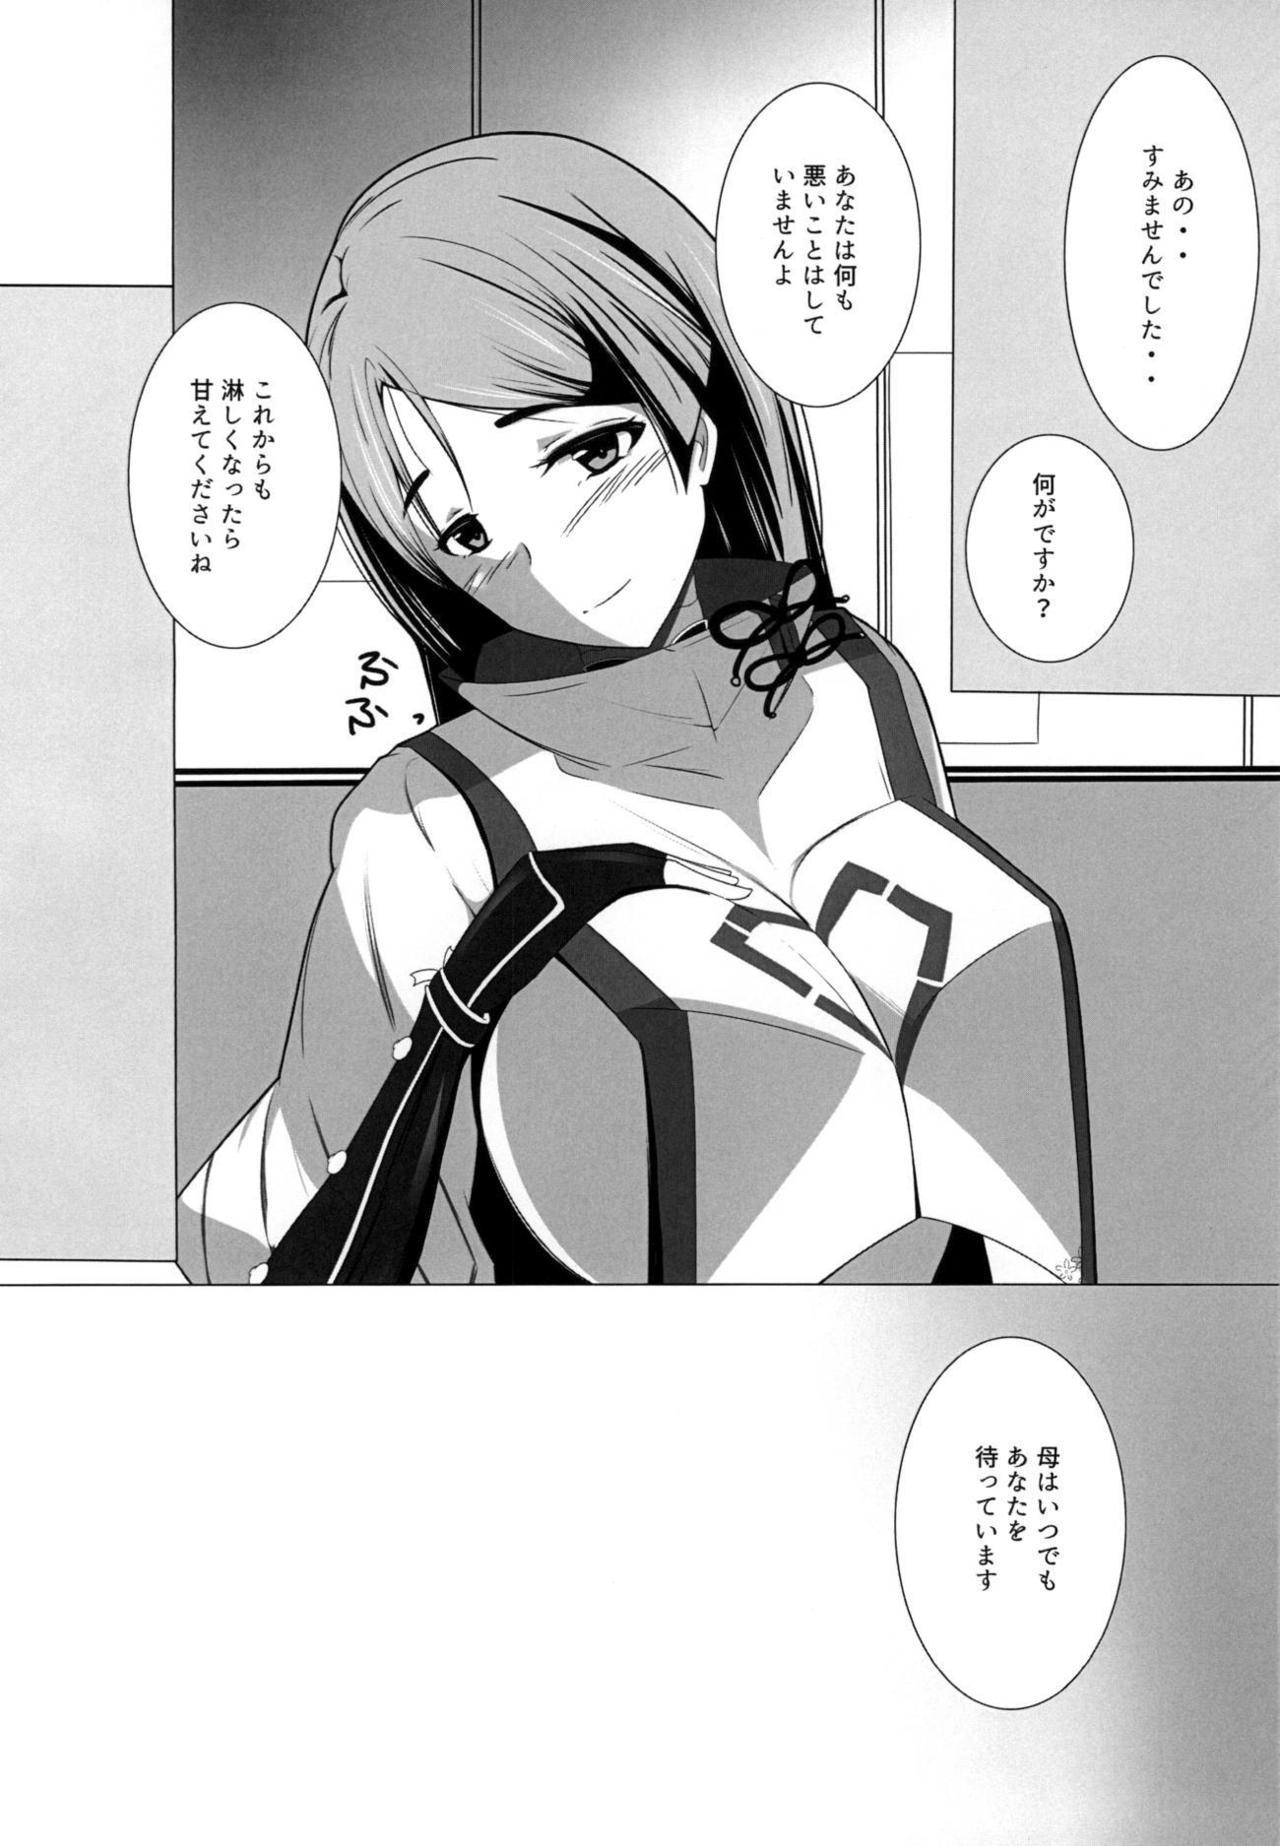 Teentube Shinsei na Hahaue o Kegashite Shimau Manga - Fate grand order Nudity - Page 17